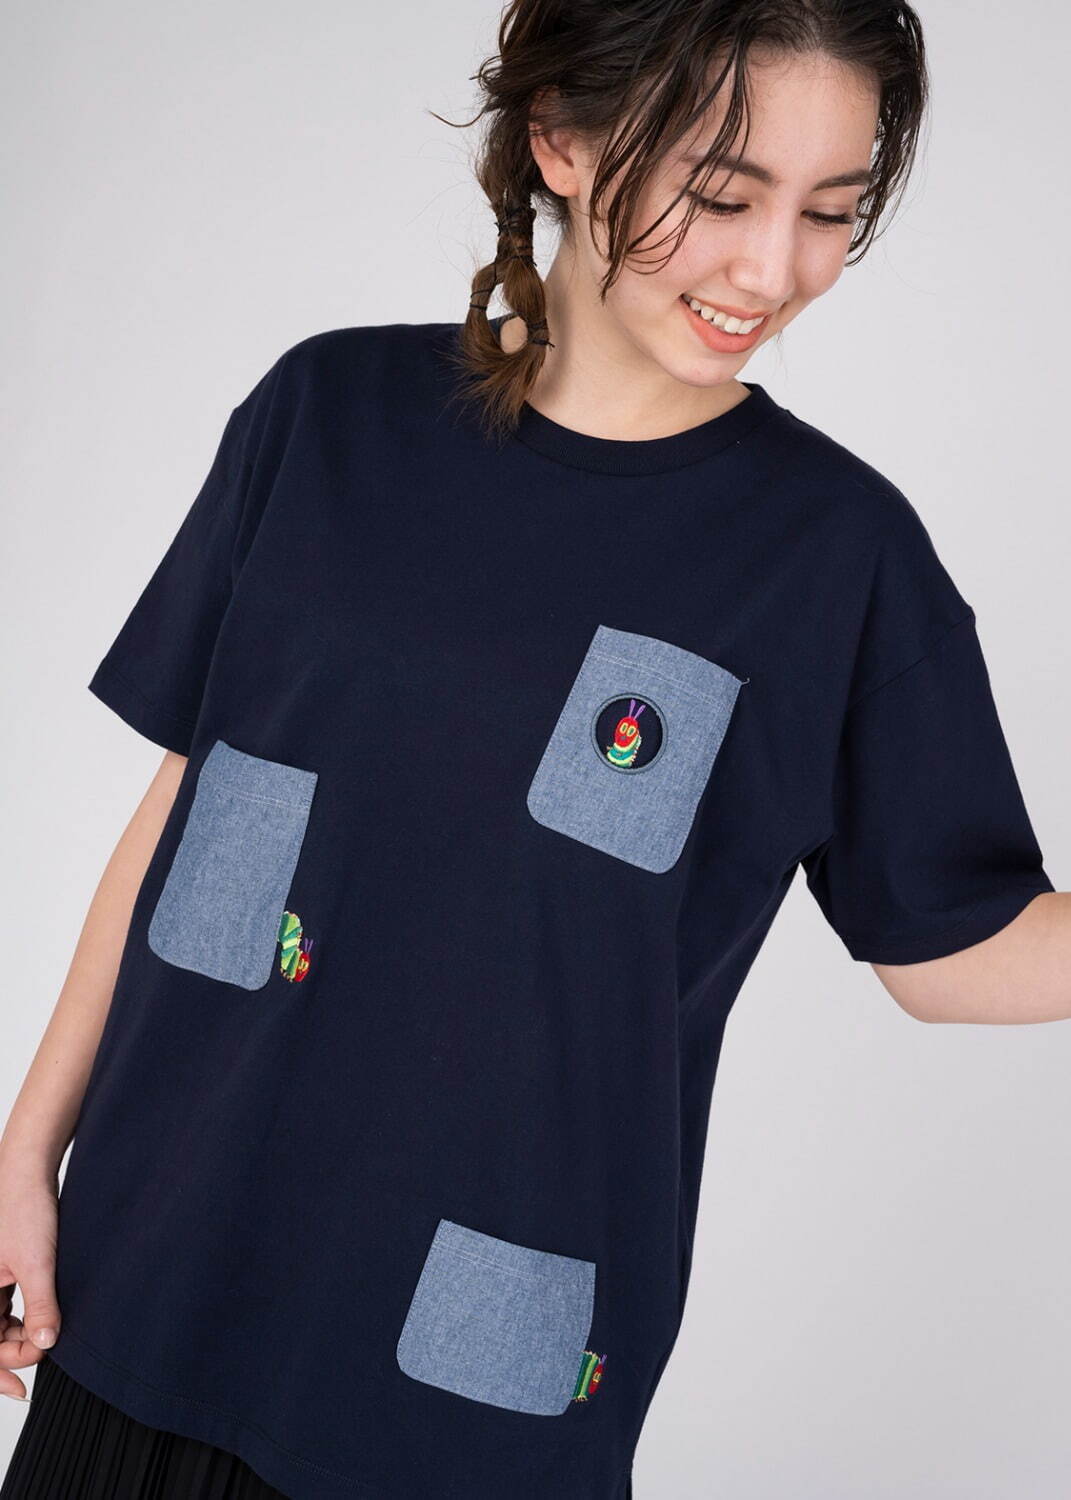 グラニフ×エリック・カール「はらぺこあおむし」刺繍Tシャツ&“穴